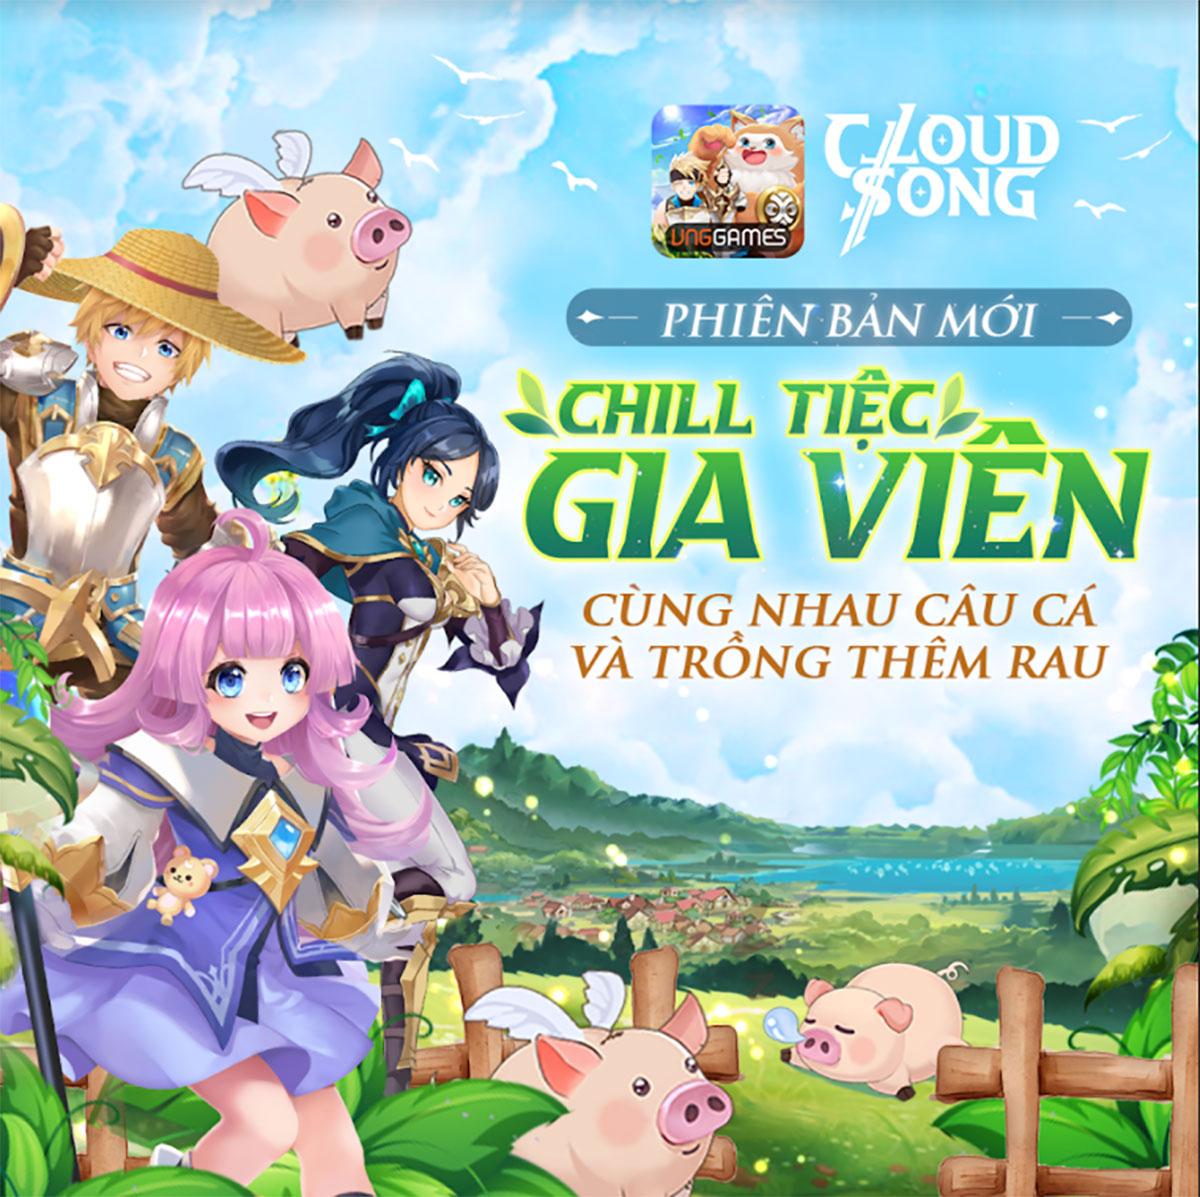 Cloud Song VNG là một trò chơi đặc sắc và hấp dẫn. Hãy chiêm ngưỡng hình ảnh này để hiểu rõ hơn về cốt truyện và những tính năng đặc biệt của trò chơi này.